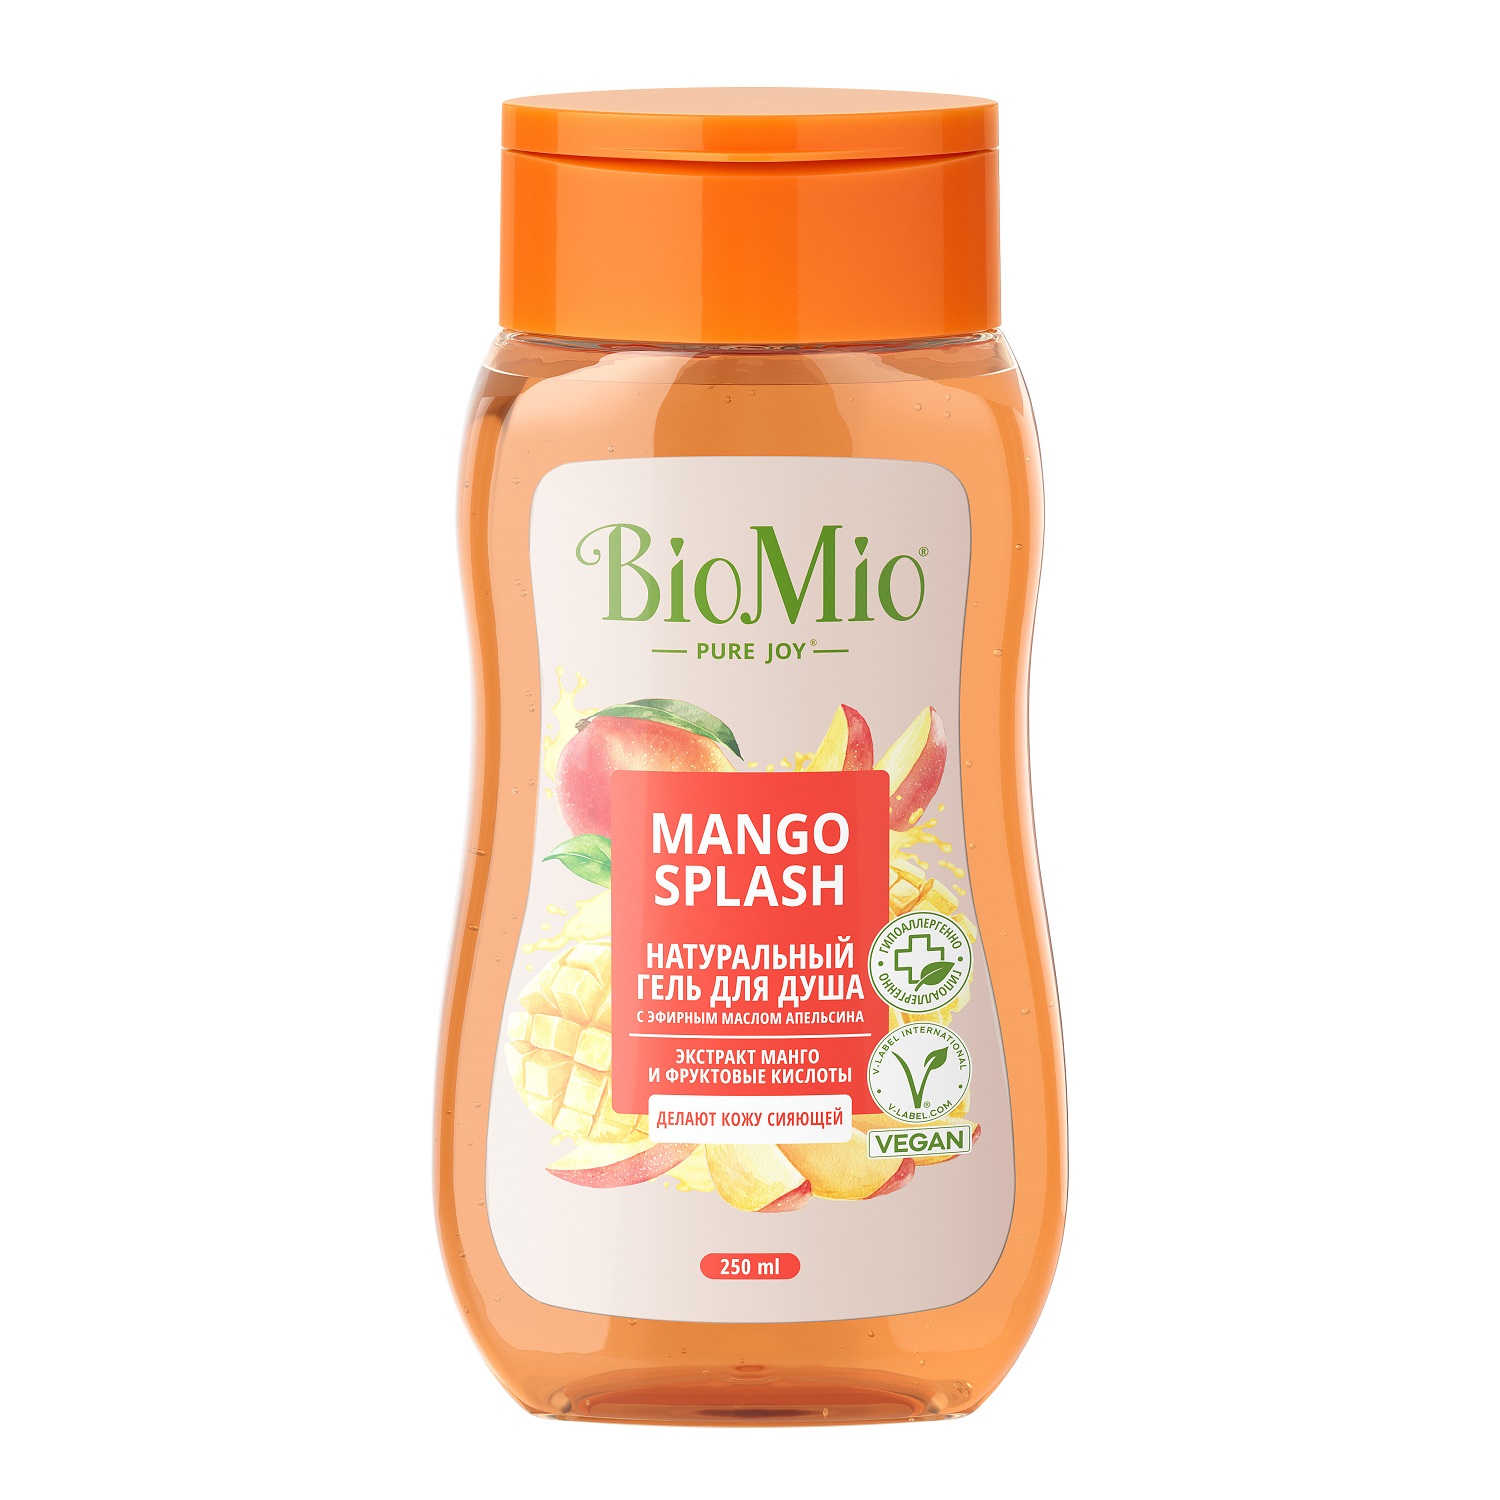 BioMio Гель для душа с экстрактом манго Mango Splash, 250 мл (BioMio, Для ванны и душа) натуральный гель шампунь для душа biomio with mint